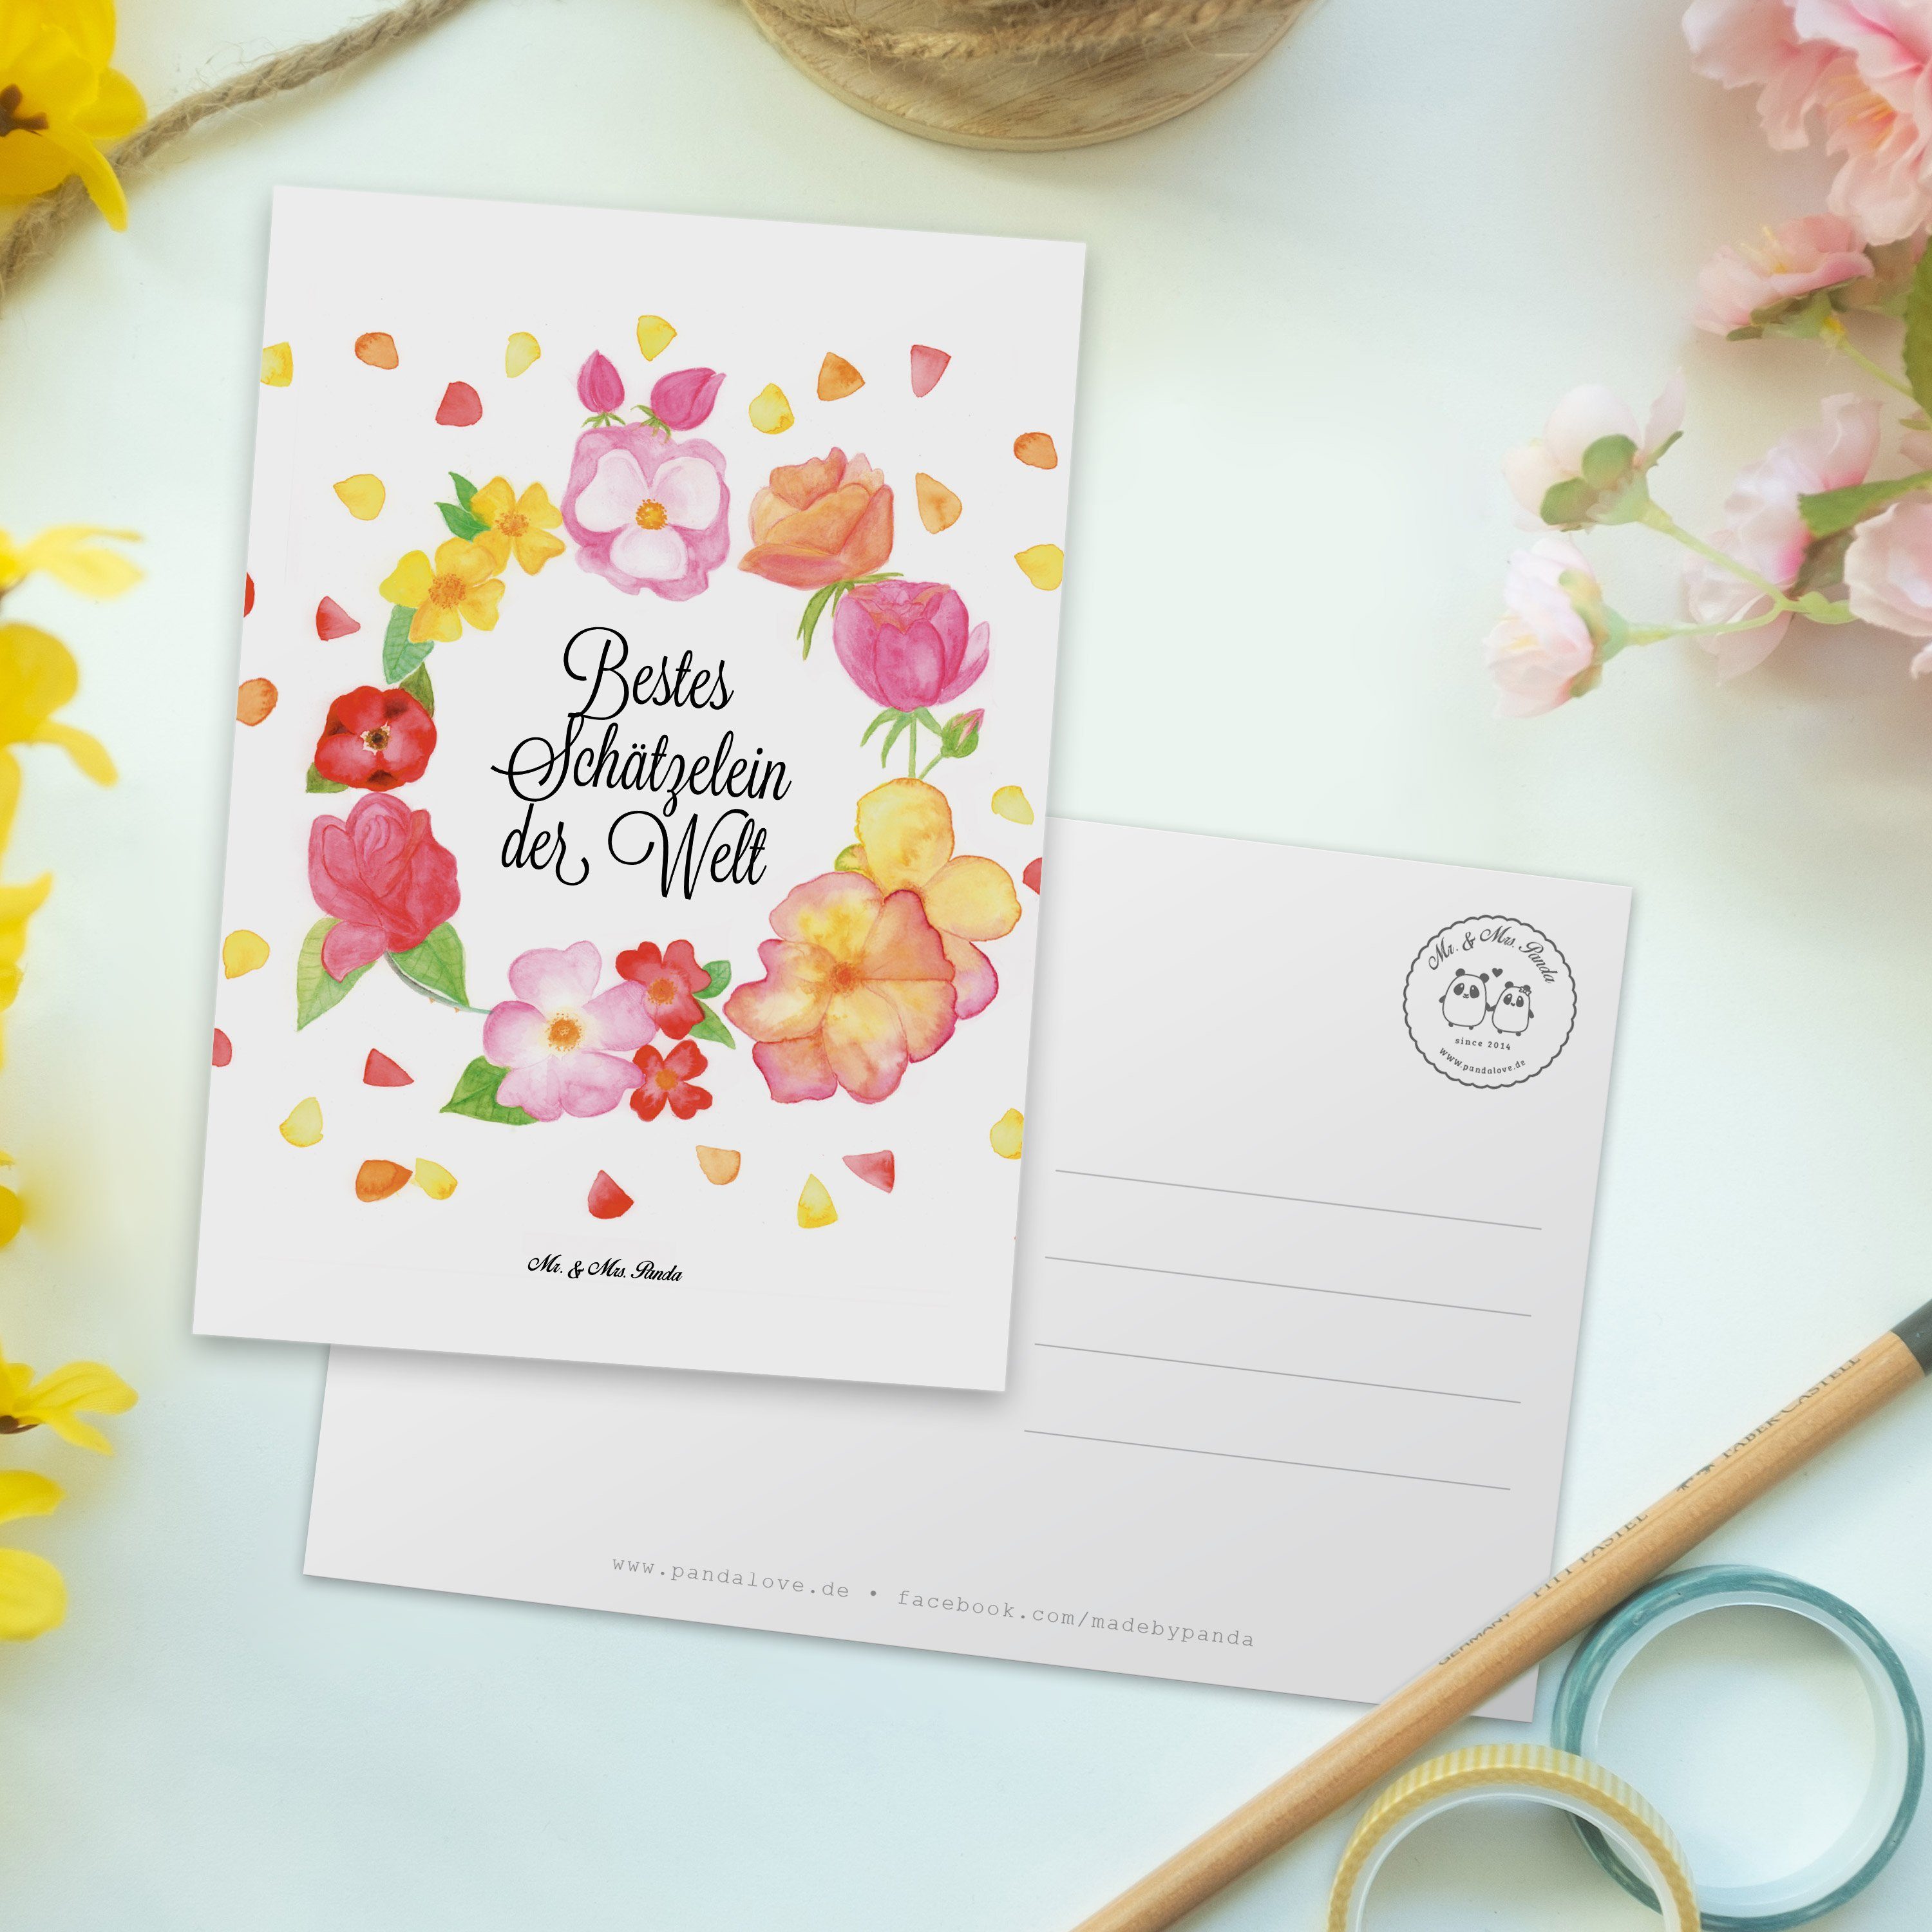 Mr. & Mrs. Panda Schätzelein Blumen Flower, Liebe Geschenk, - Mann, Karte, Ansi Weiß Postkarte 